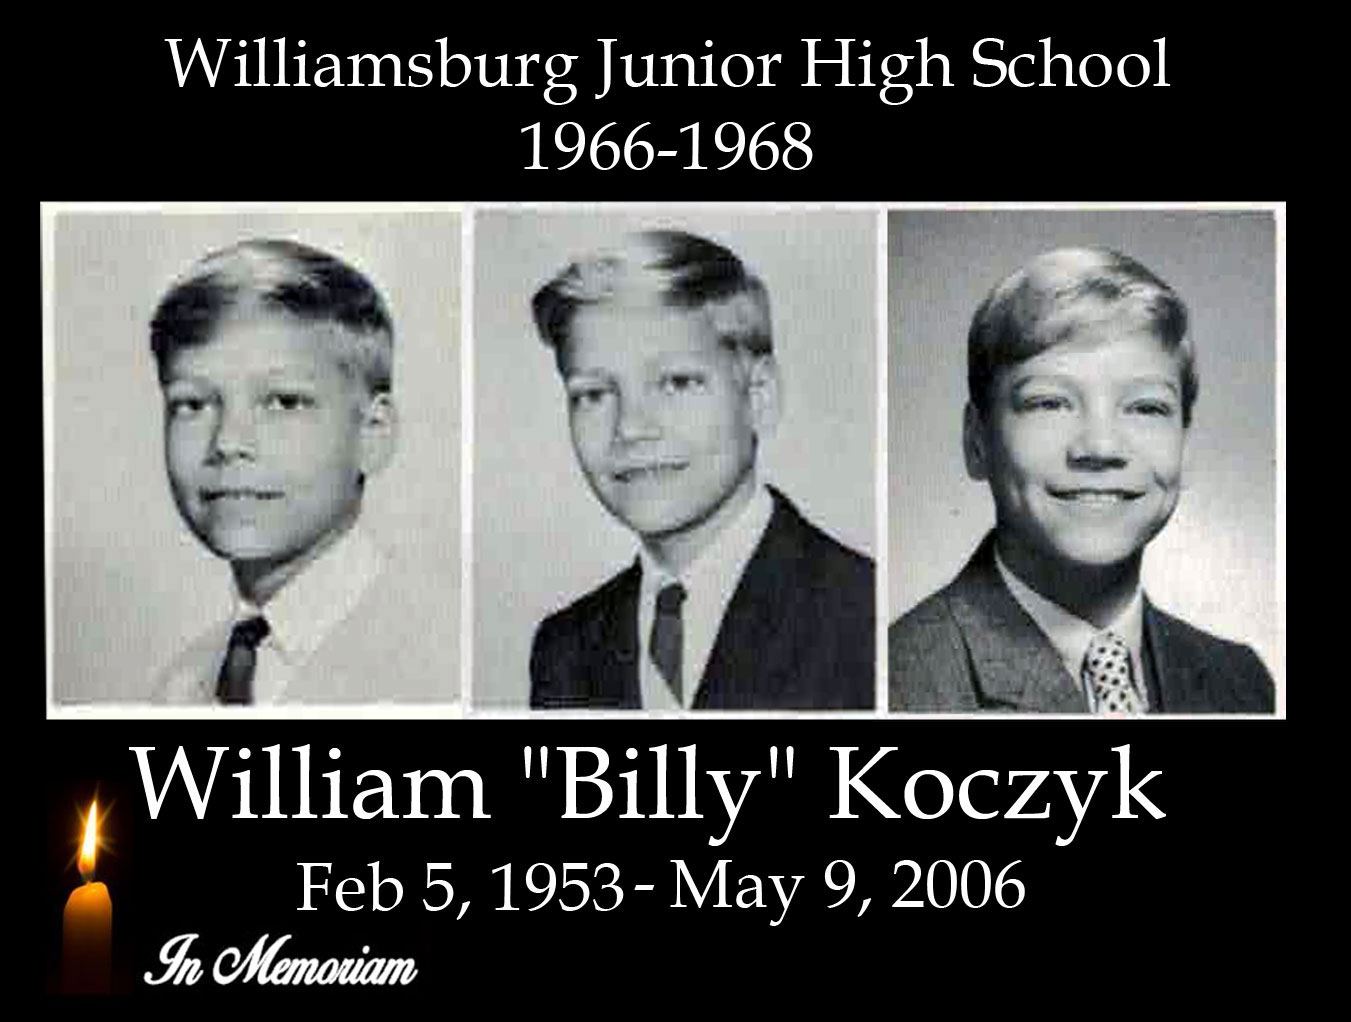 tribute to Billy Koczyk